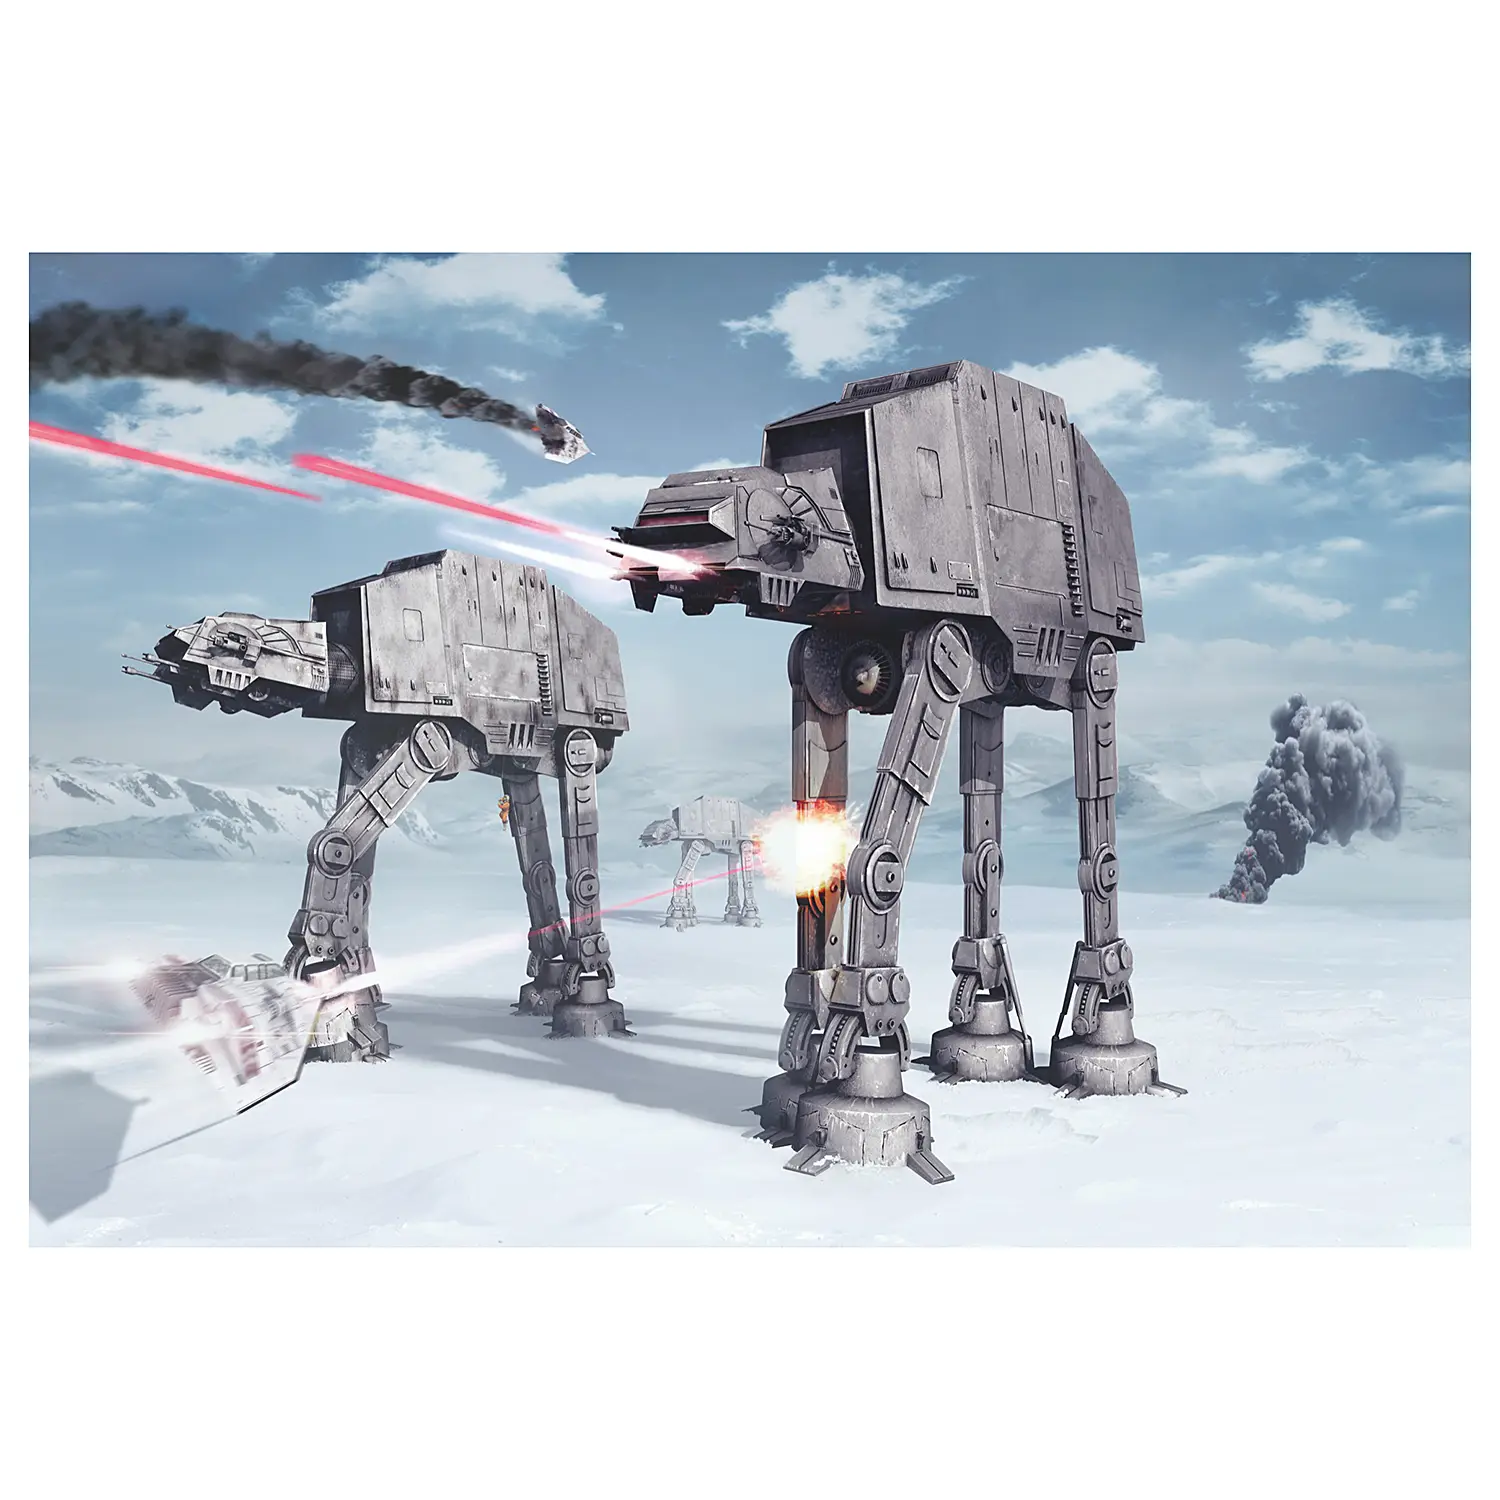 Fototapete of Star Wars Hoth Battle